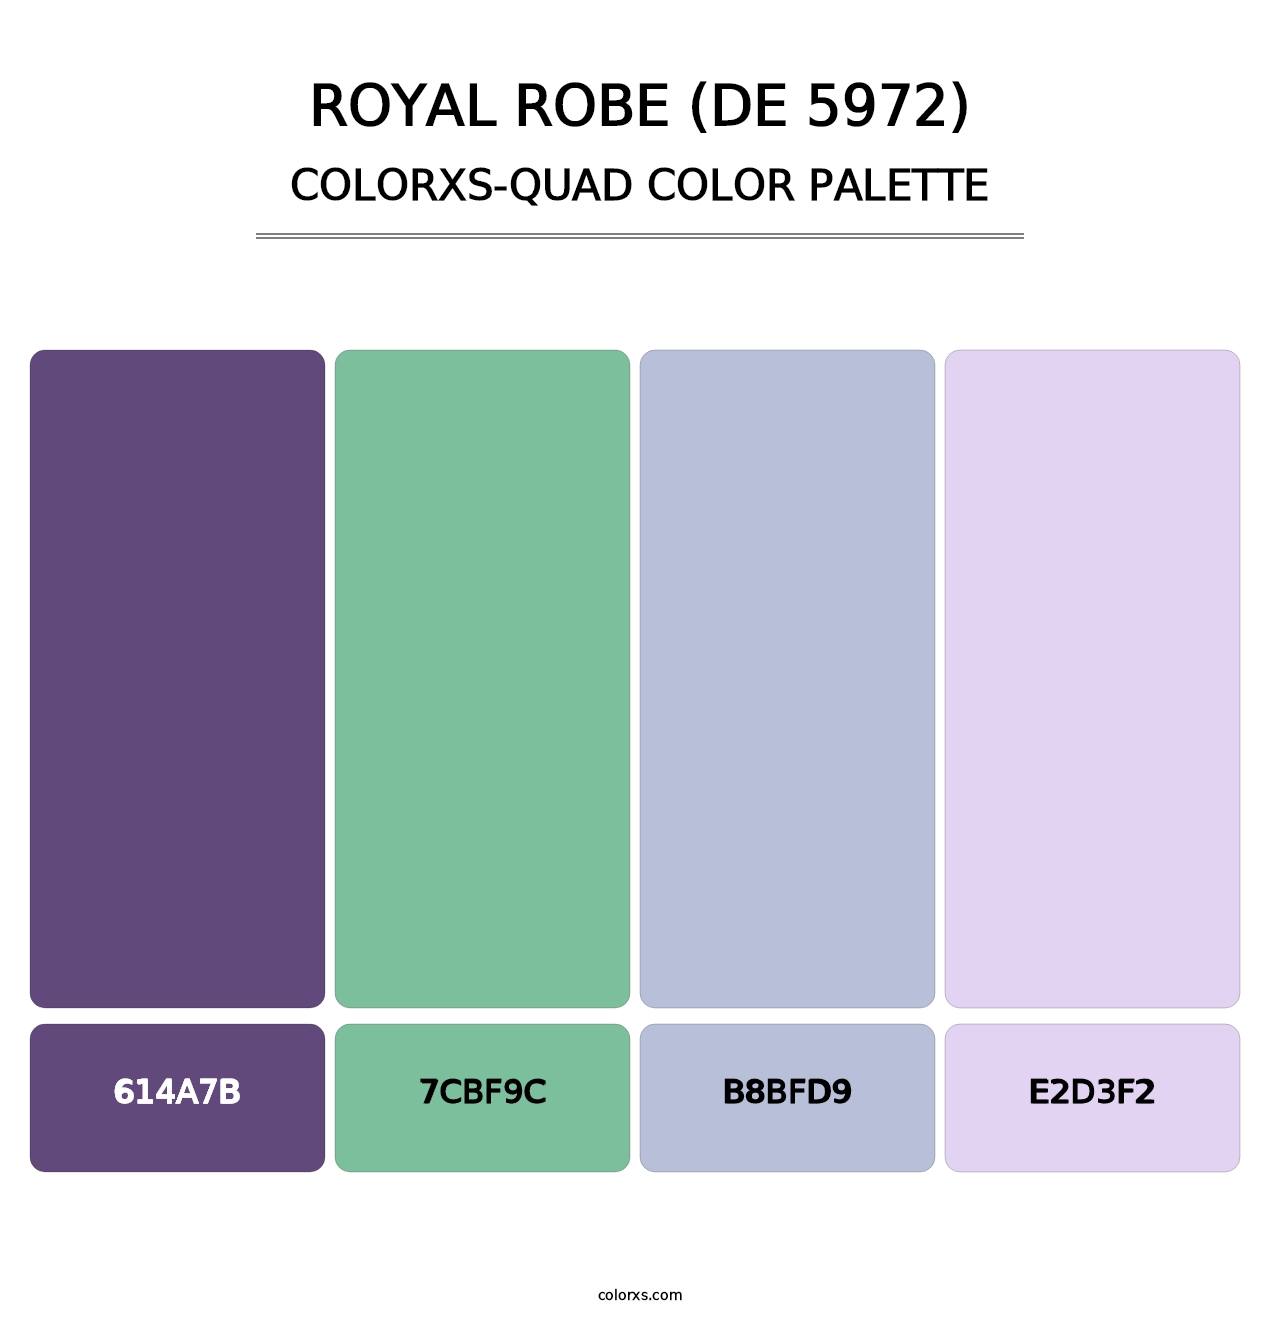 Royal Robe (DE 5972) - Colorxs Quad Palette